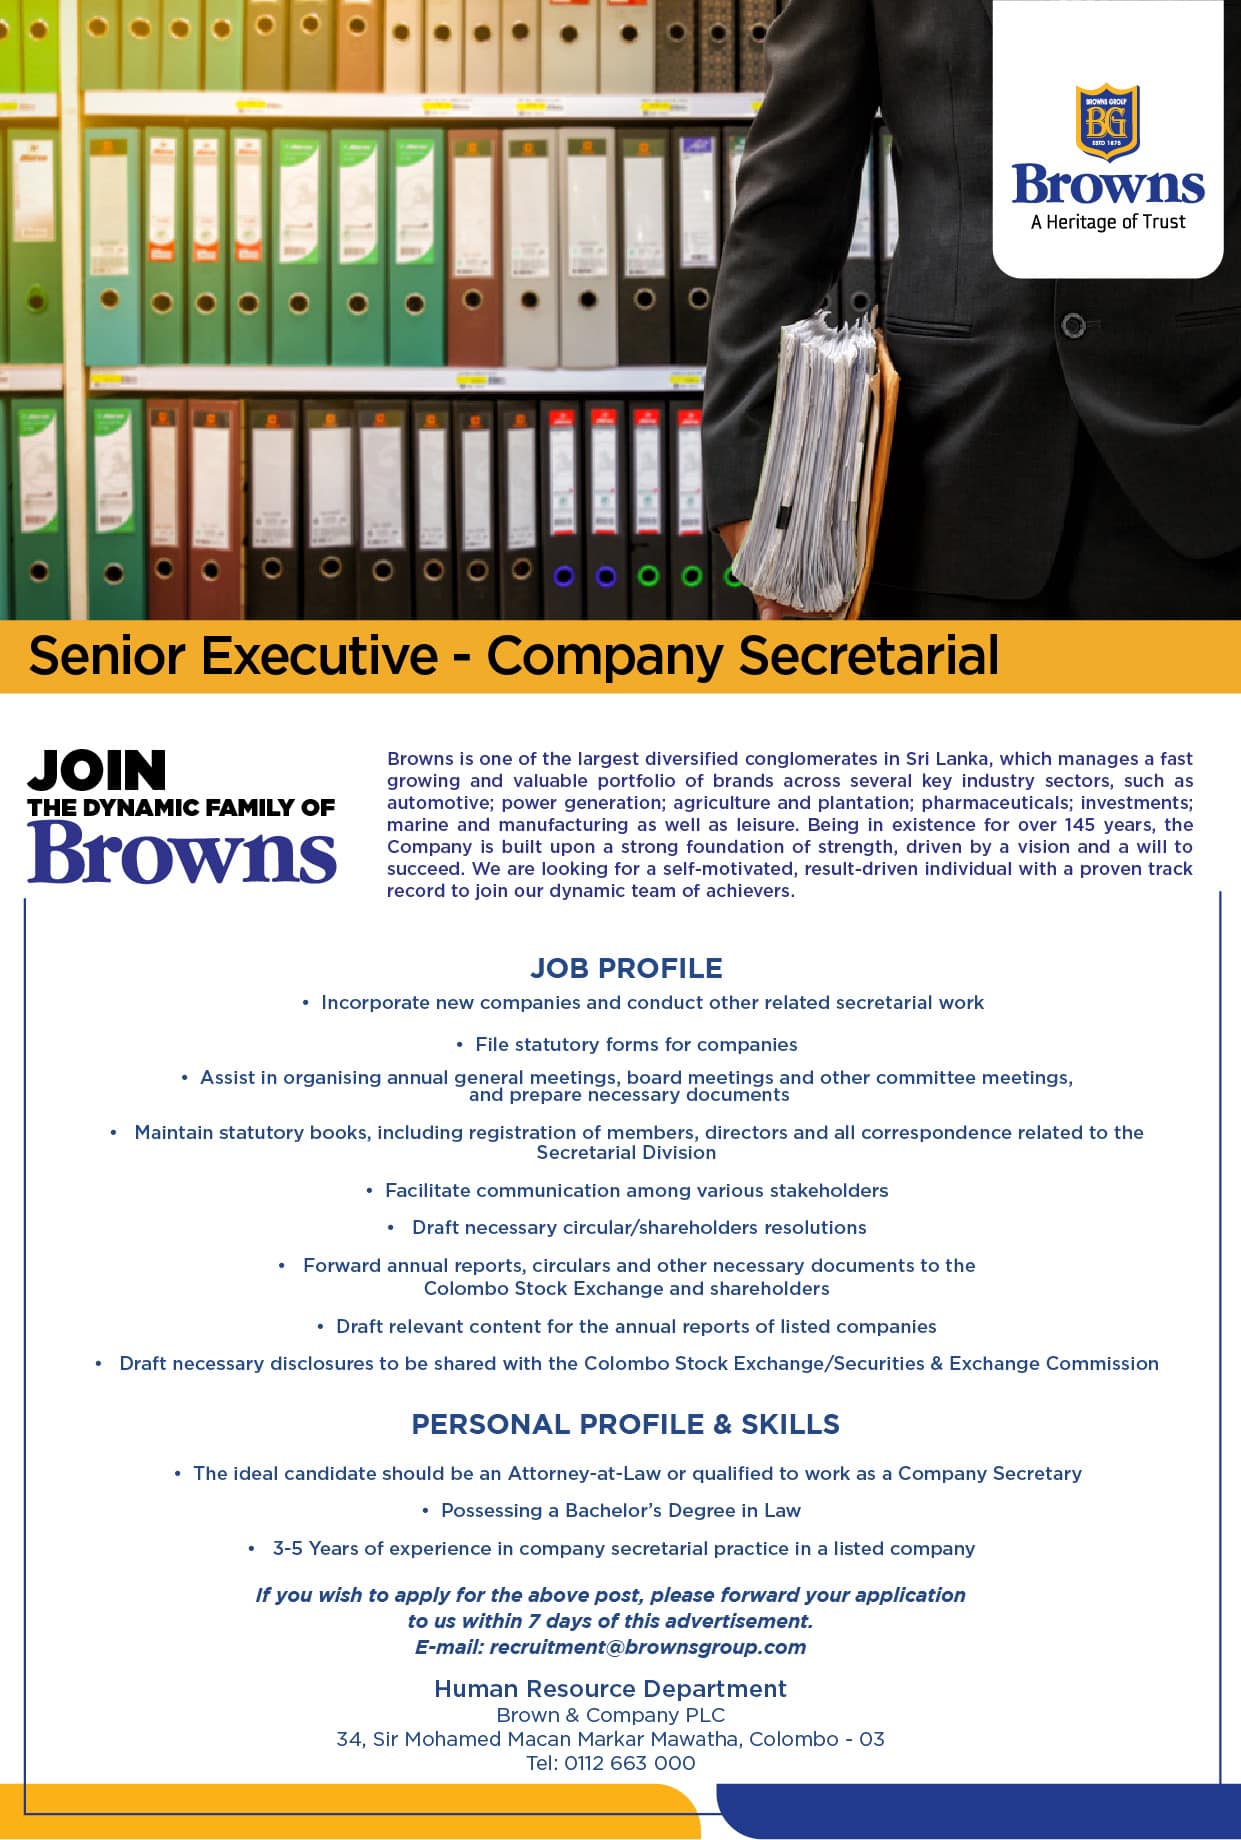 Senior Executive Jobs Vacancies - Brown and Company PLC Job Vacancy Recruitment